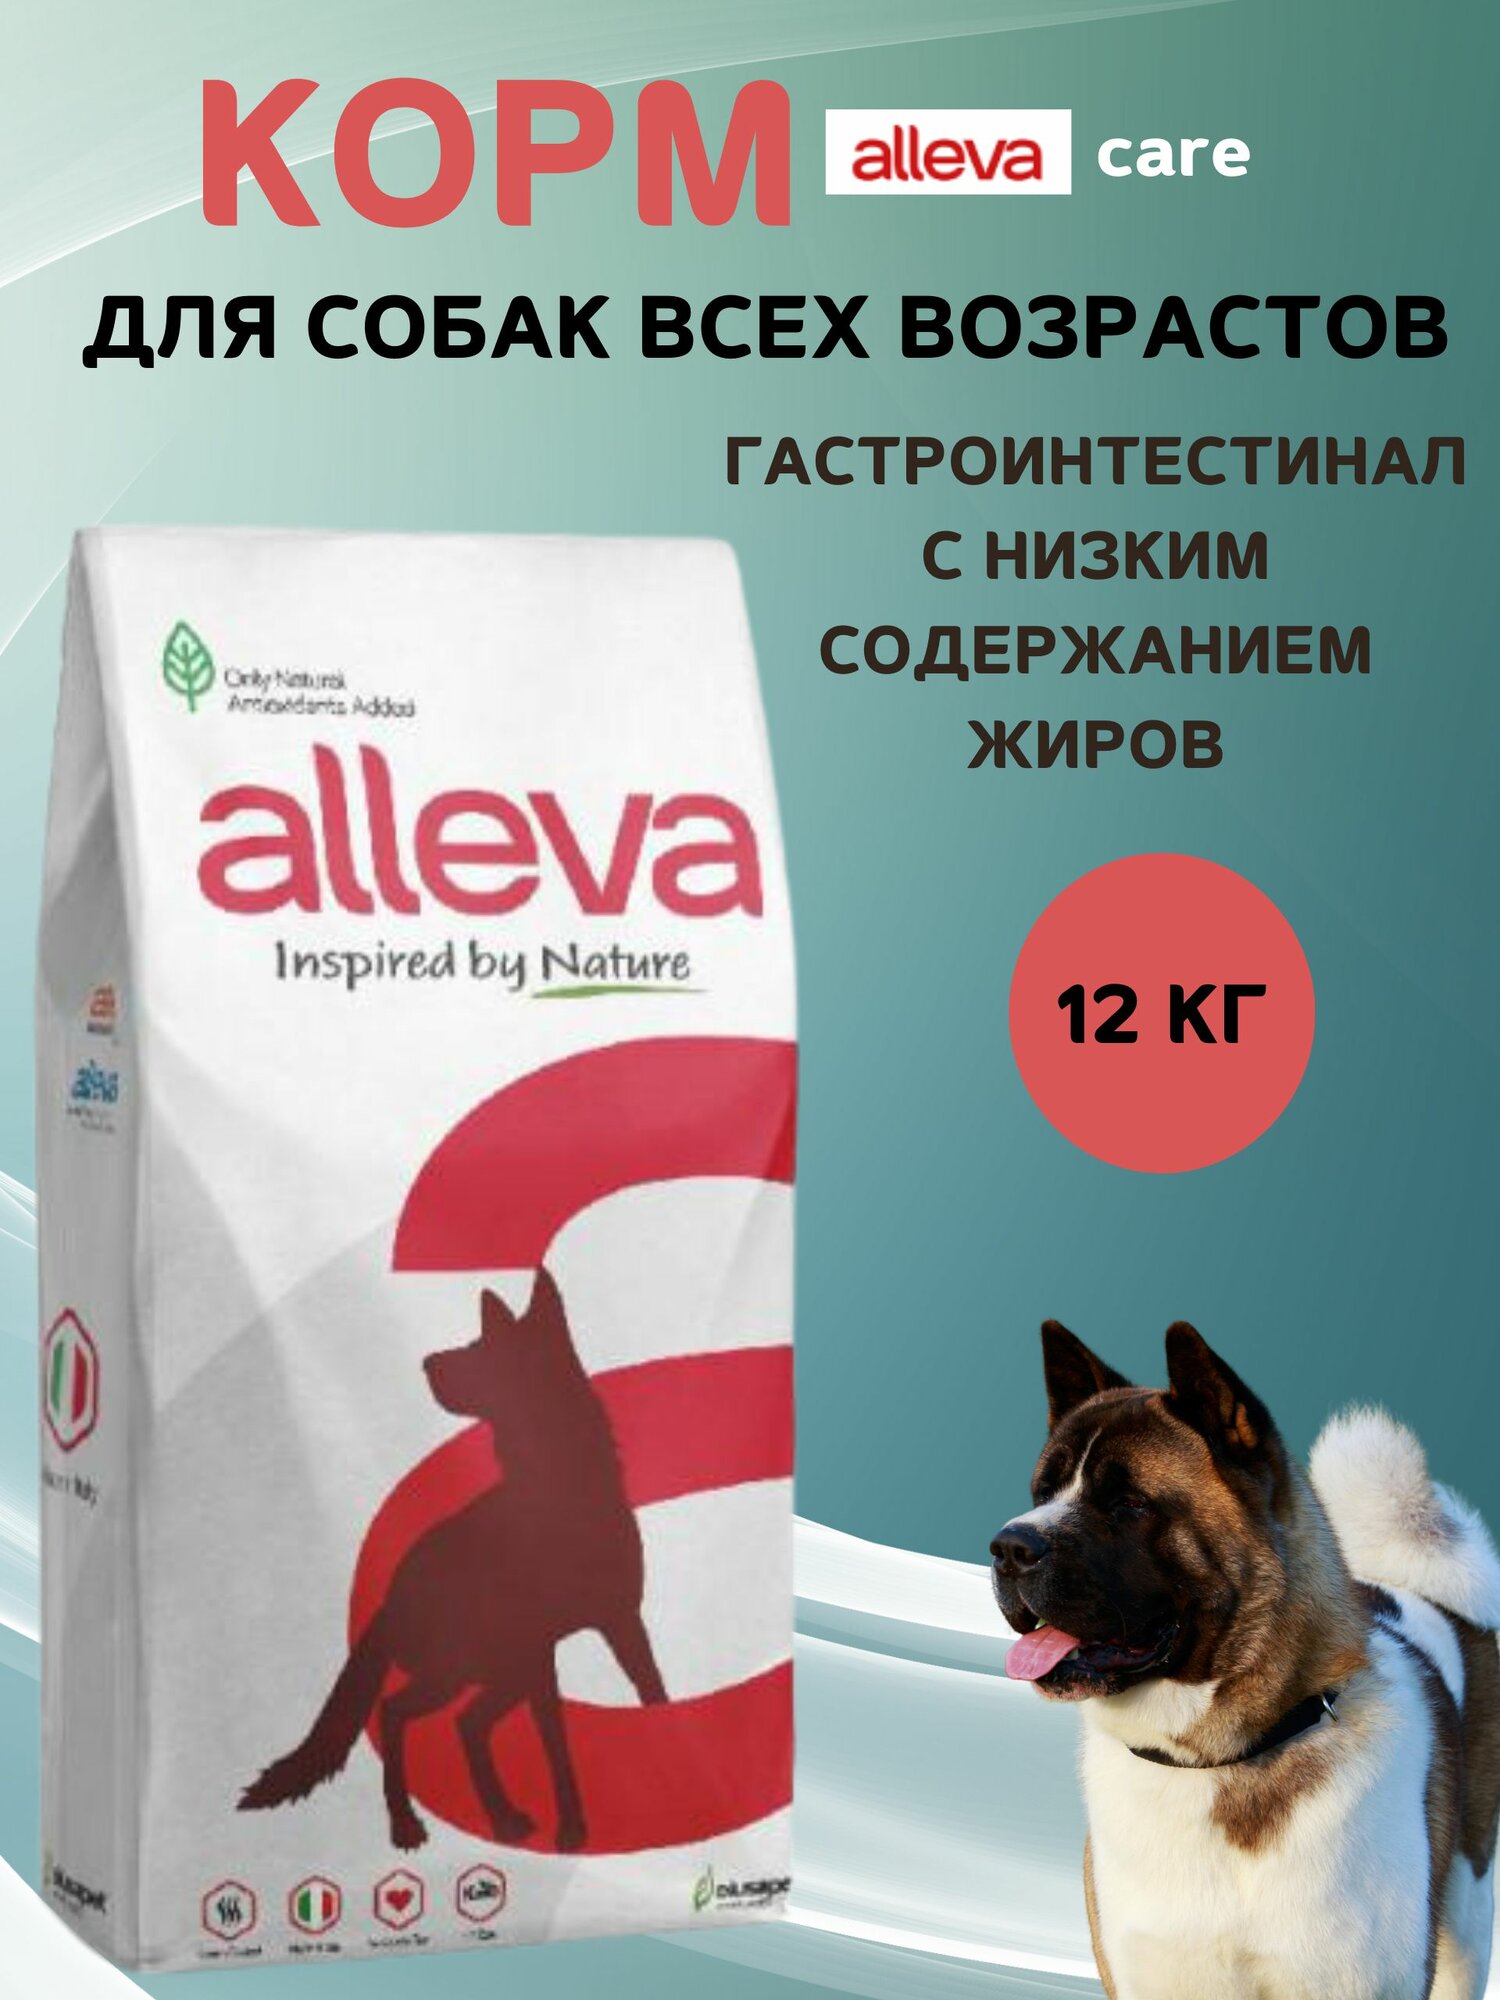 Корм для собак Alleva Кэр Гастроинтестинал с низким содержанием жиров, 12 кг